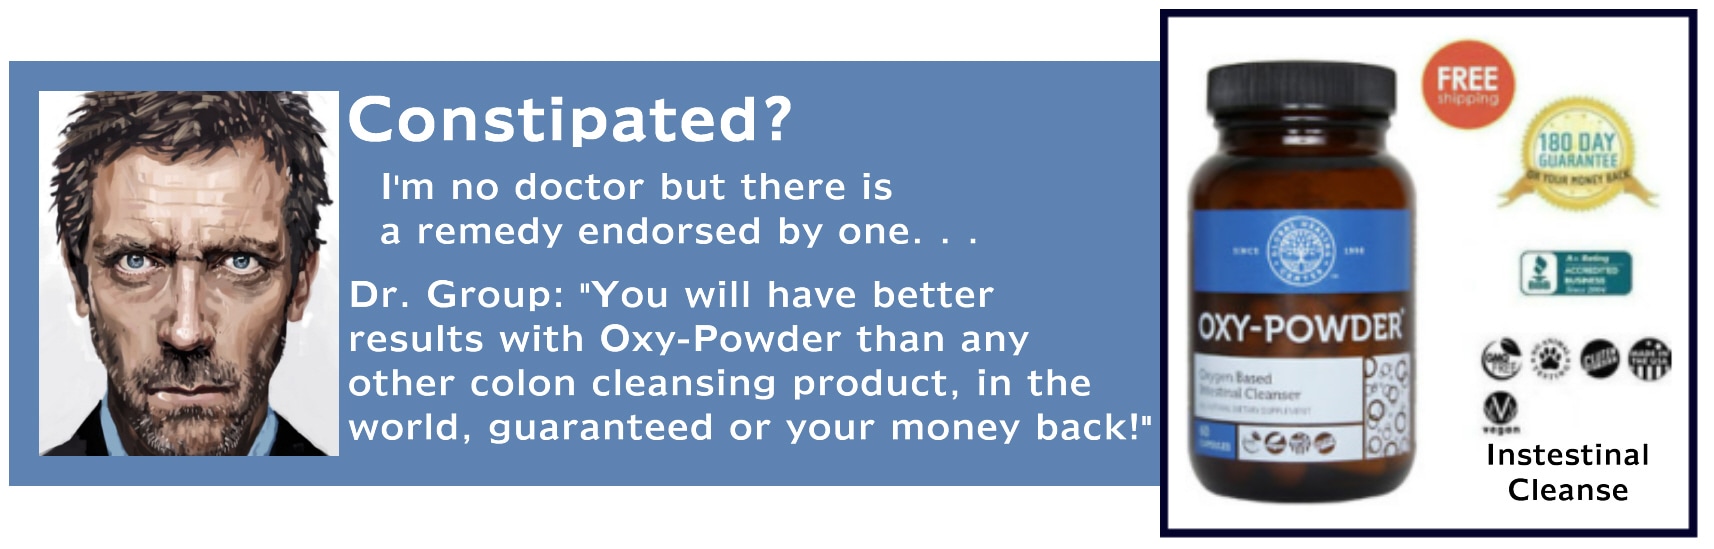 Intestinal cleanse Oxy-Powder Money Back Guarantee